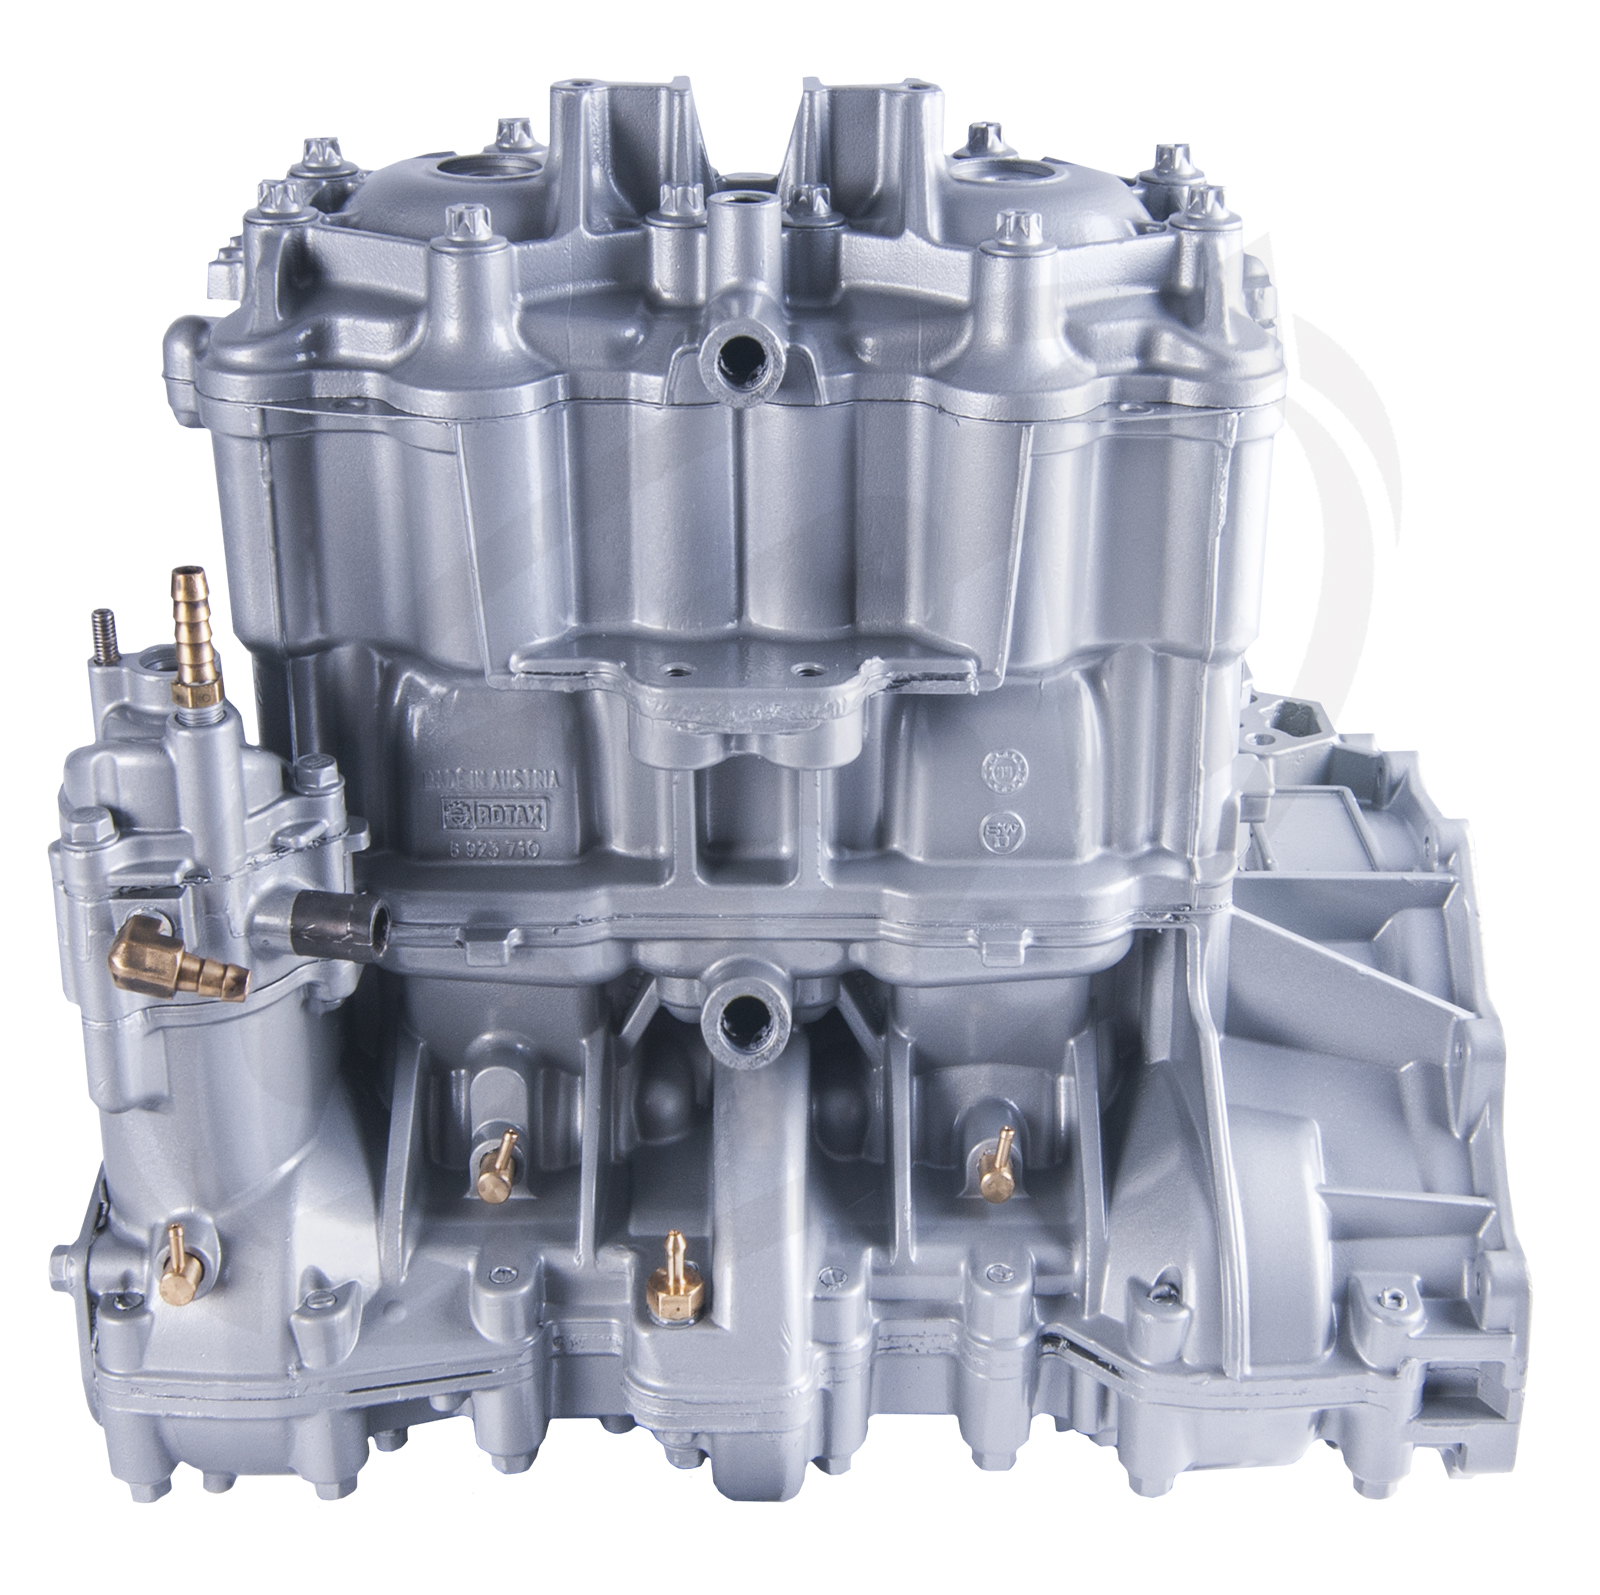 Engine for Sea-Doo 951 DI RX DI /GTX DI /LRV DI /XP DI /LE DI /3D DI  2000-06: